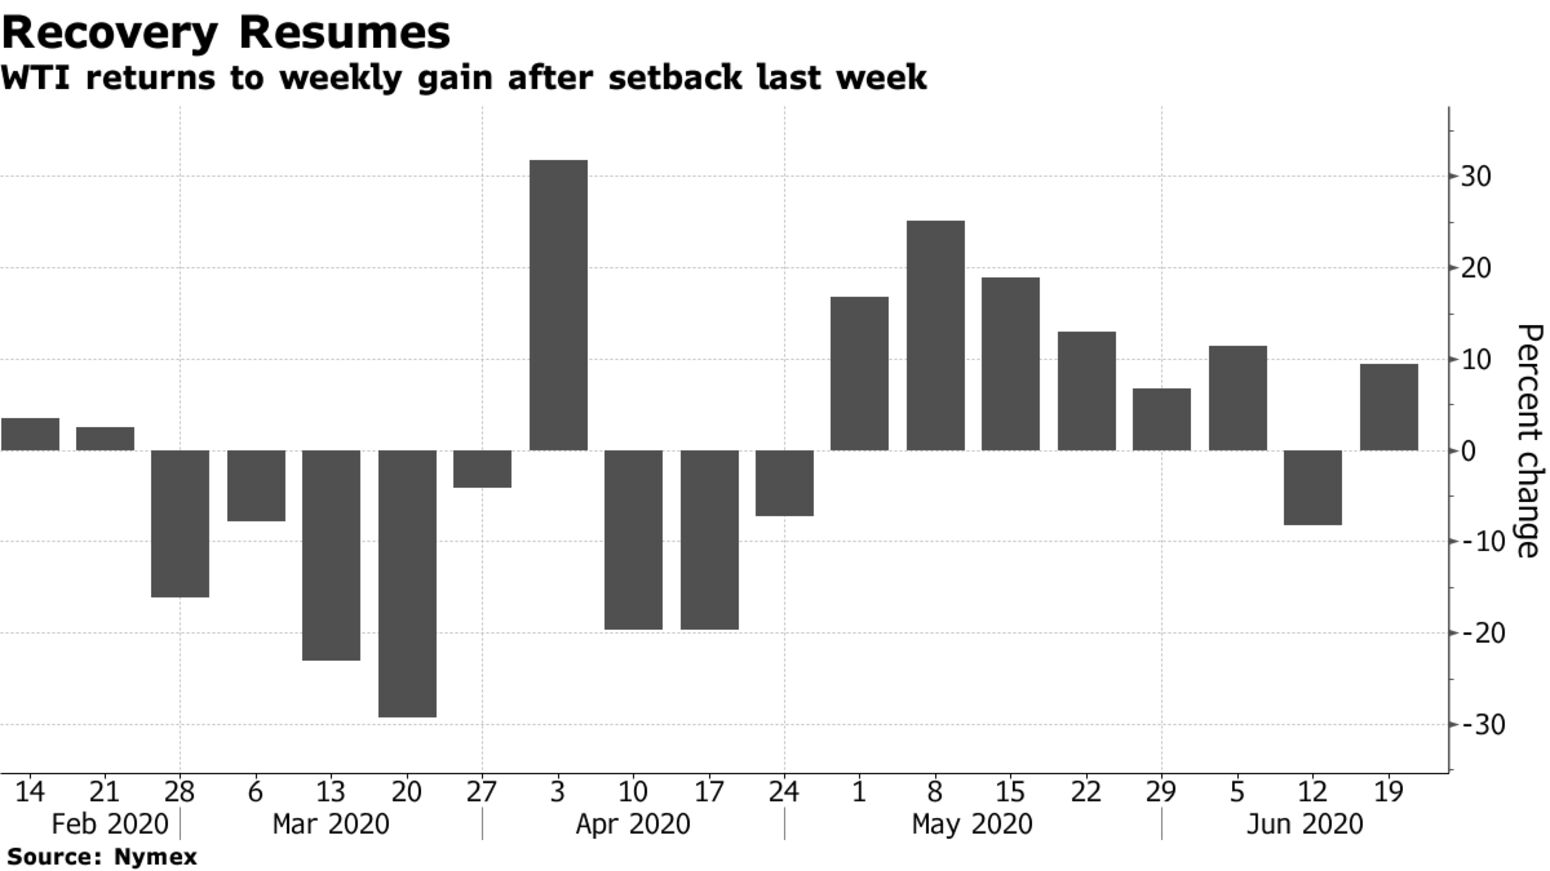 WTI returns to weekly gain after setback last week